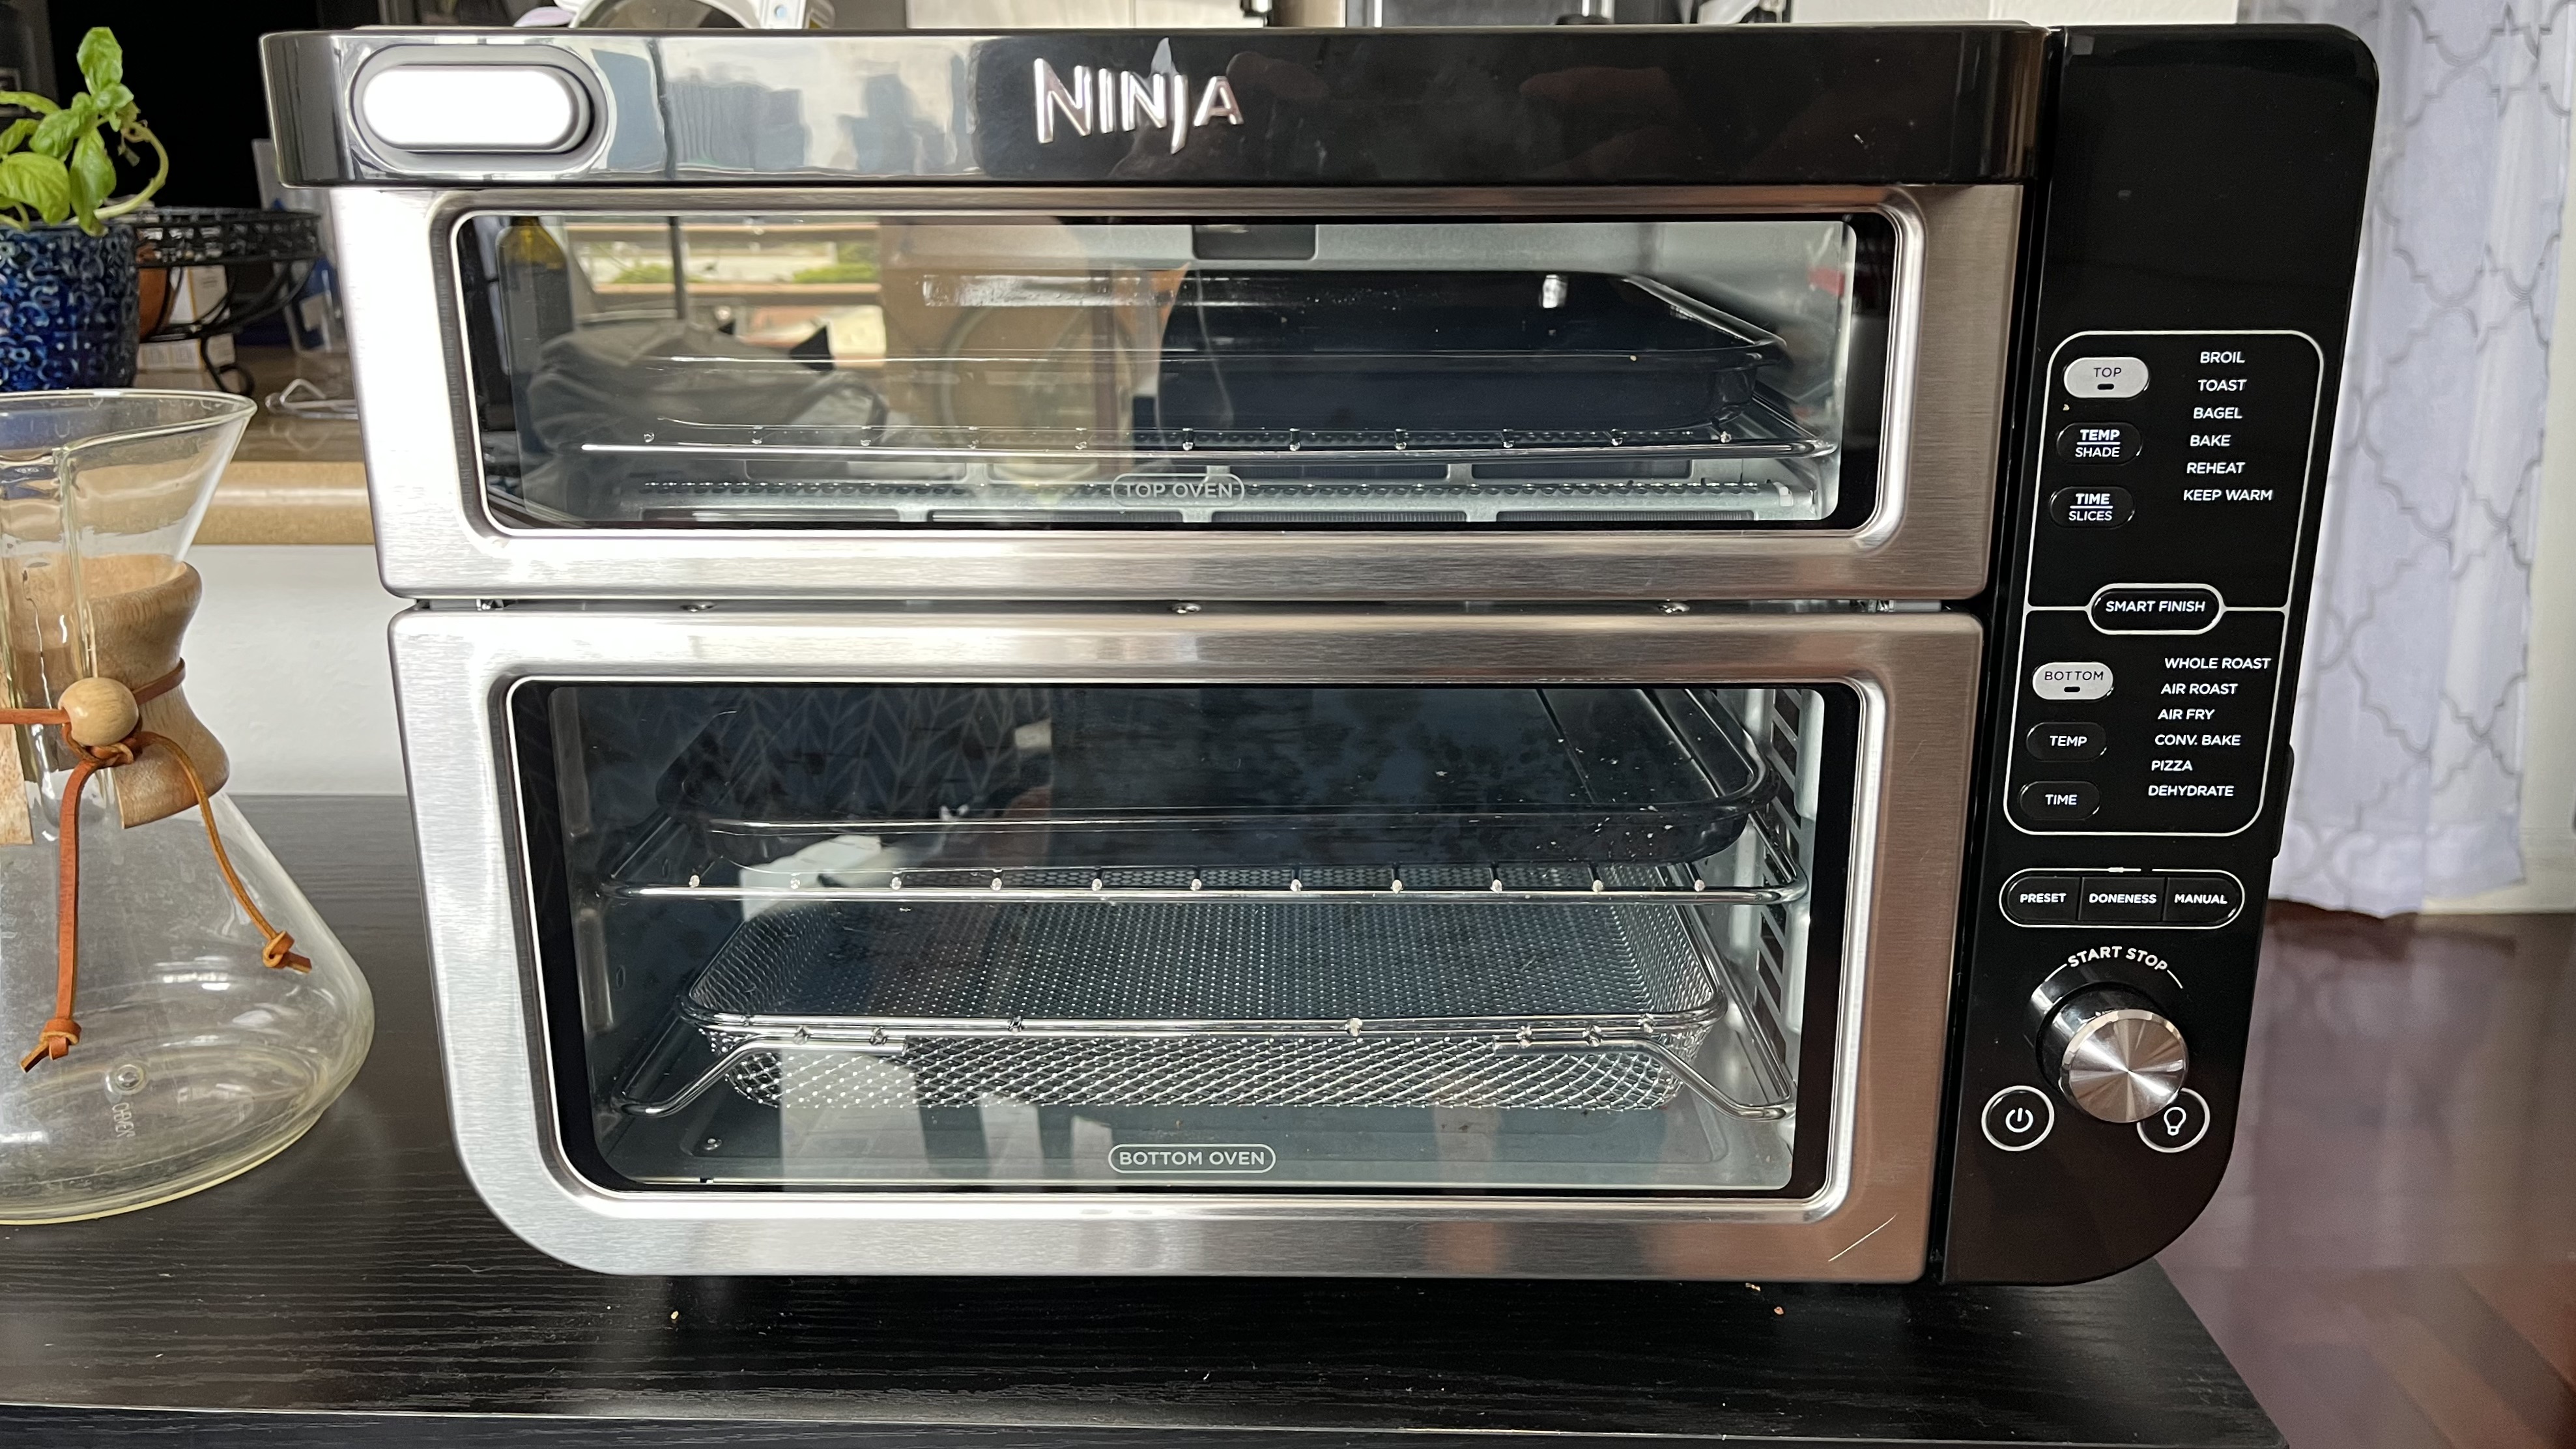 The Ninja Double Oven with FlexDoor Review